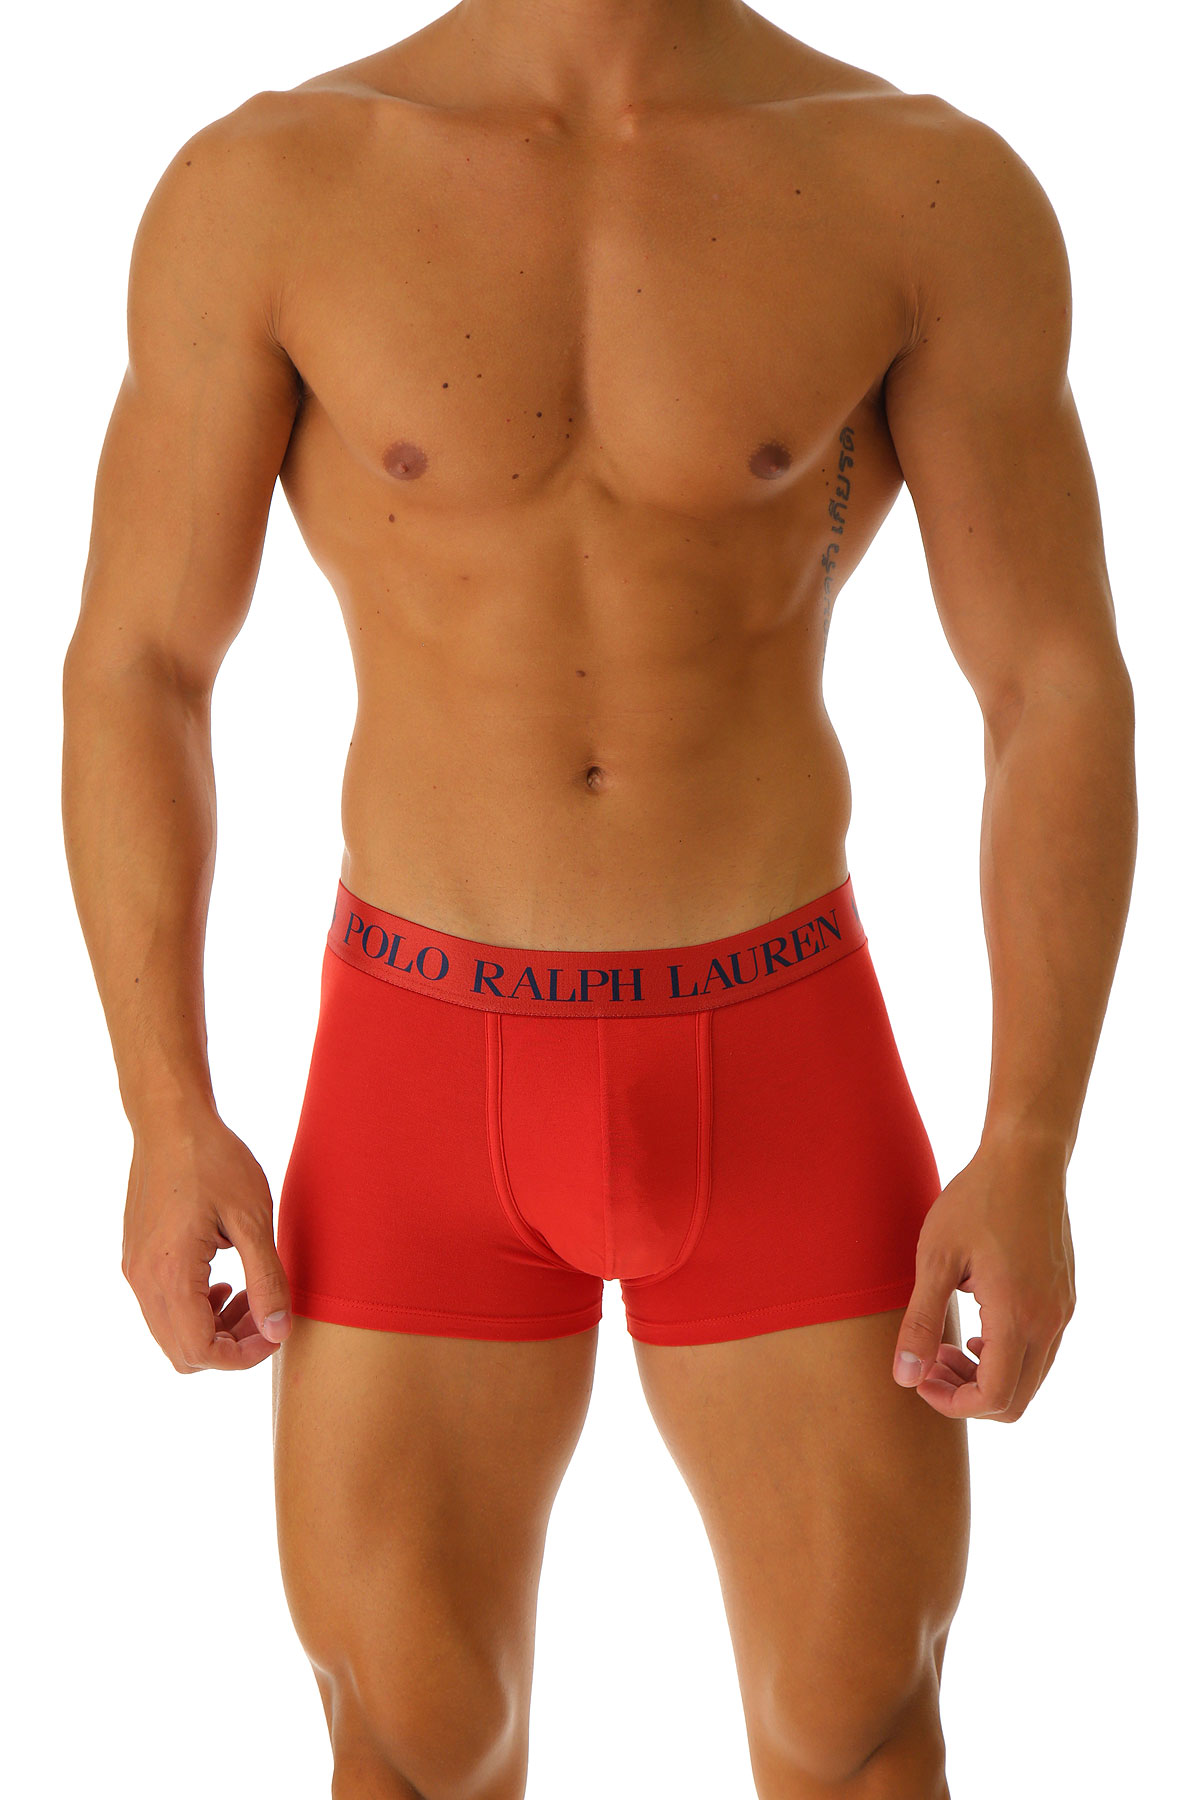 Ralph Lauren Boxer Shorts für Herren, Unterhose, Short, Boxer Günstig im Sale, Rot, Baumwolle, 2017, M S XL